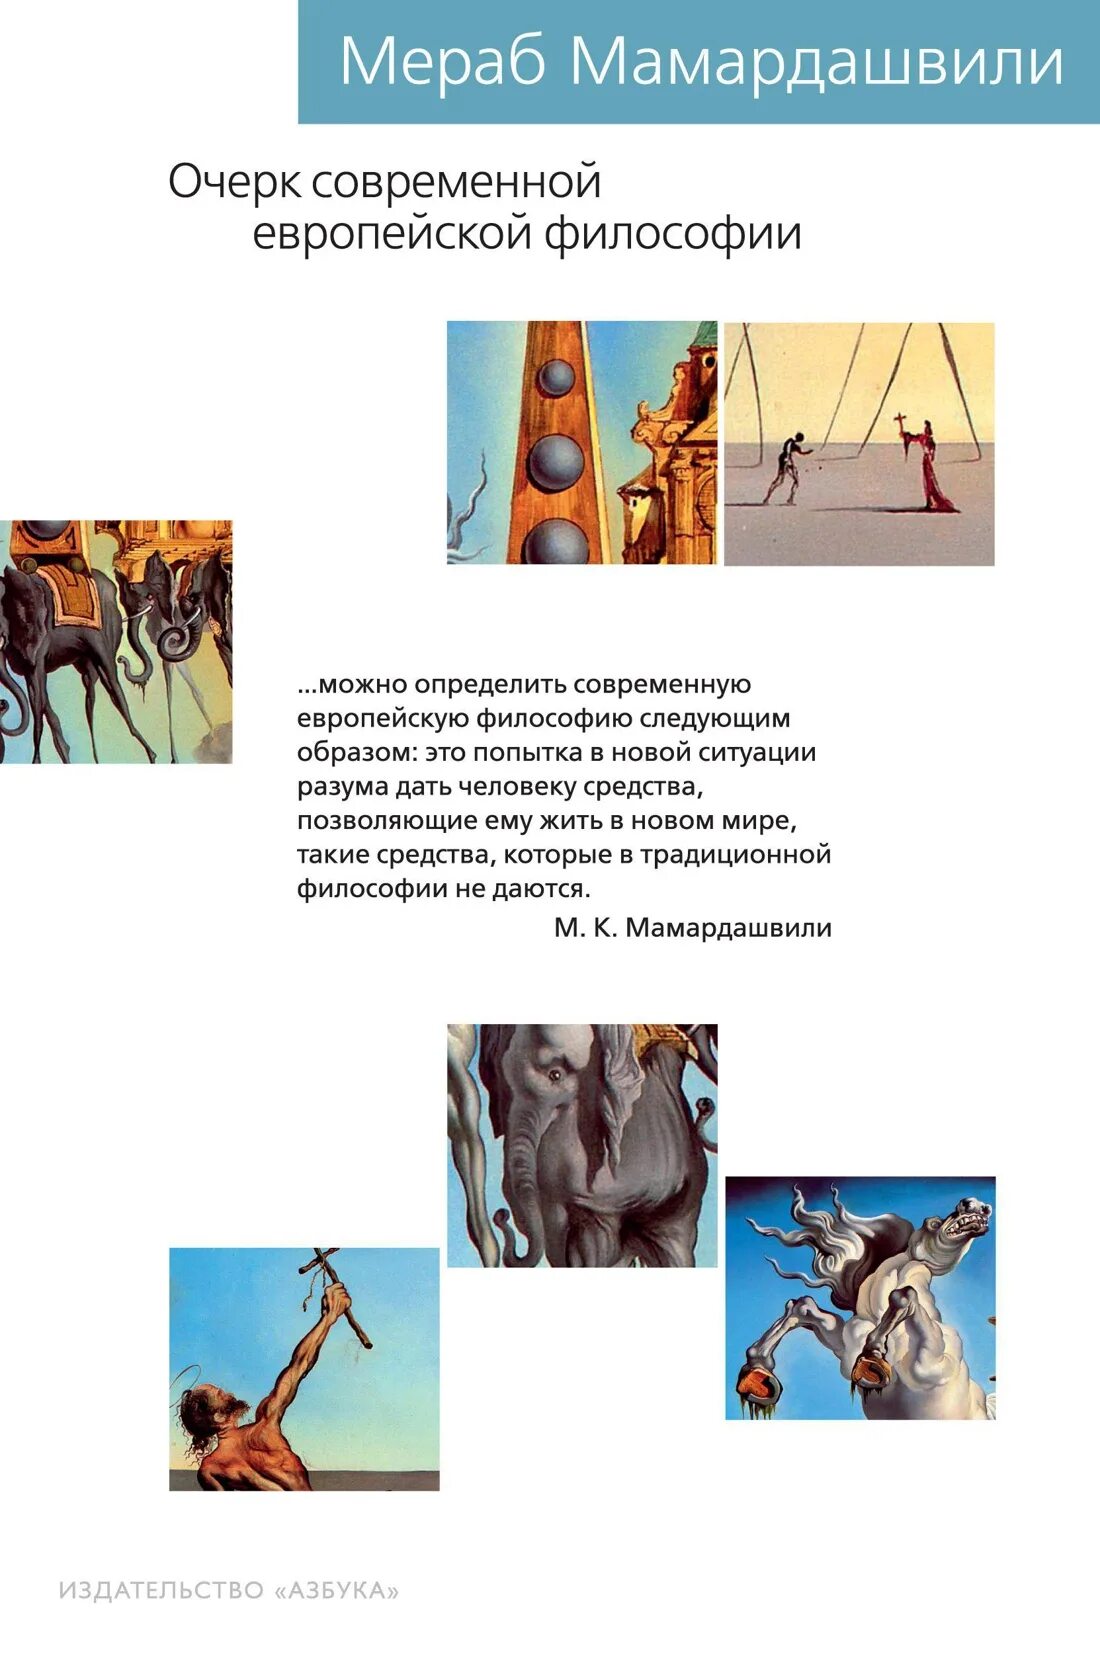 Очерк современной европейской философии. Мамардашвили "культурный код" Азбука. Современная европейская философия